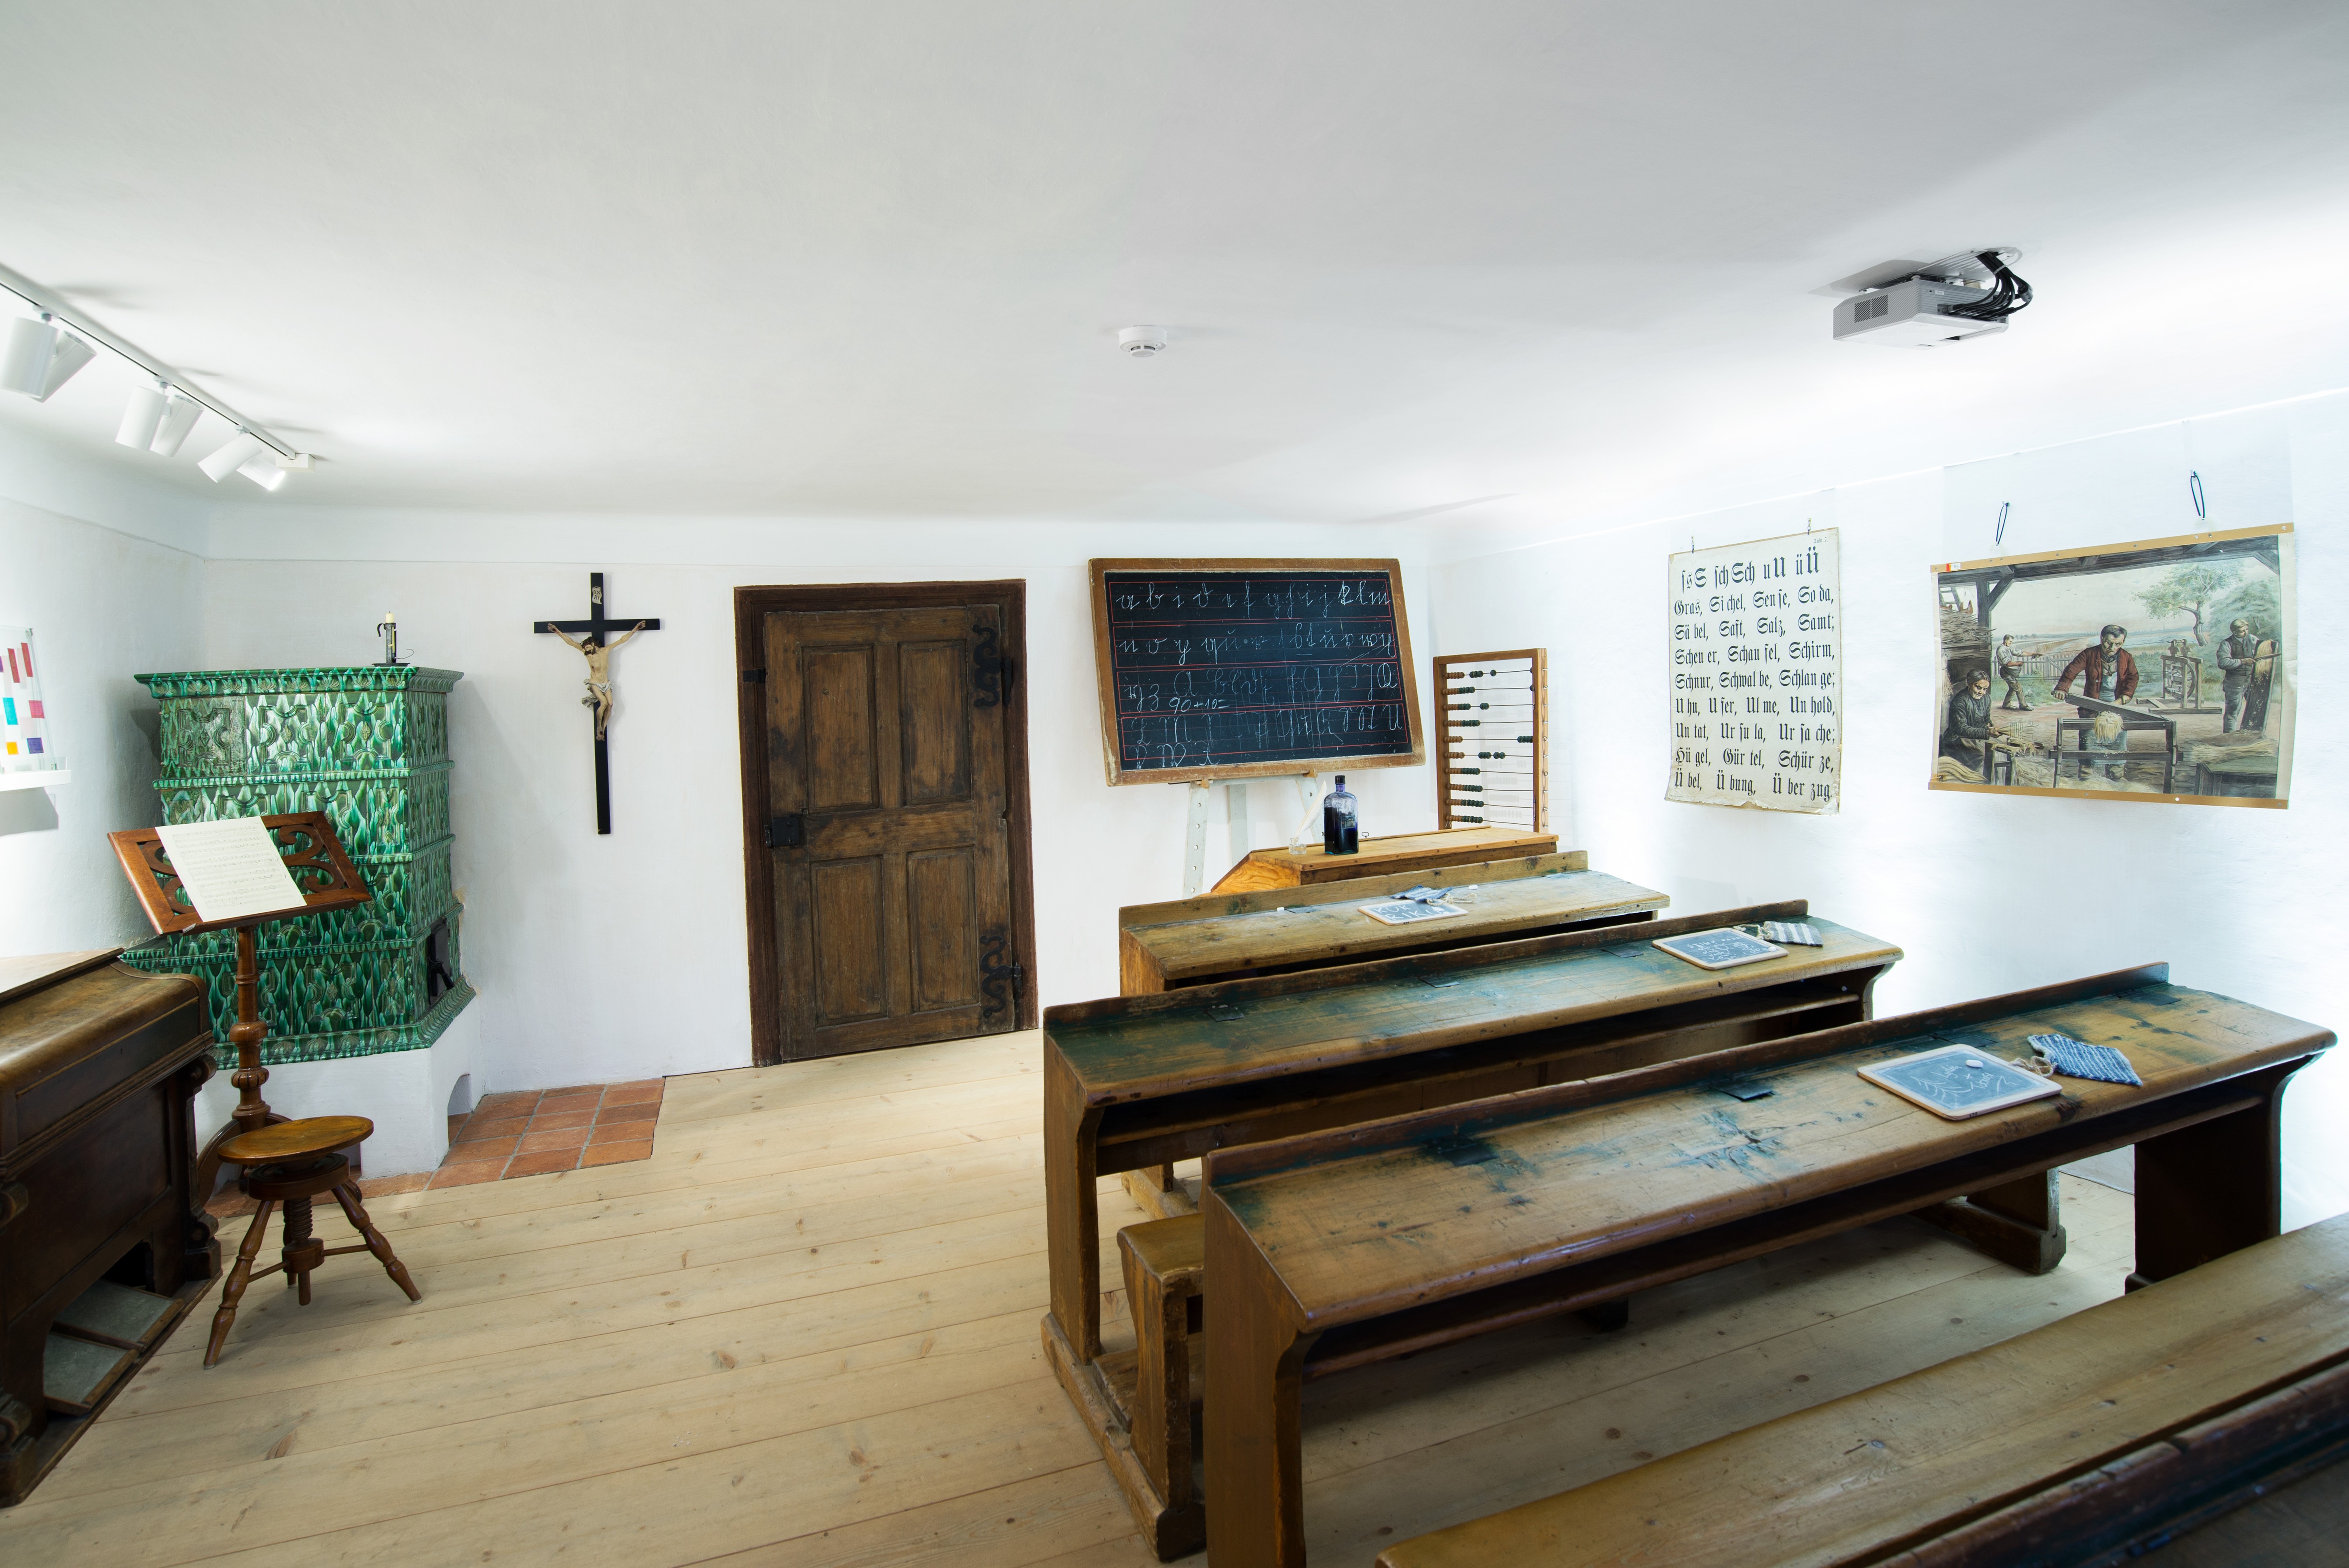 La vecchia aula scolastica nel museo di Arnsdorf, con i banchi di legno, la cattedra il grande crocifisso alla parete e la stufa di maiolica verde